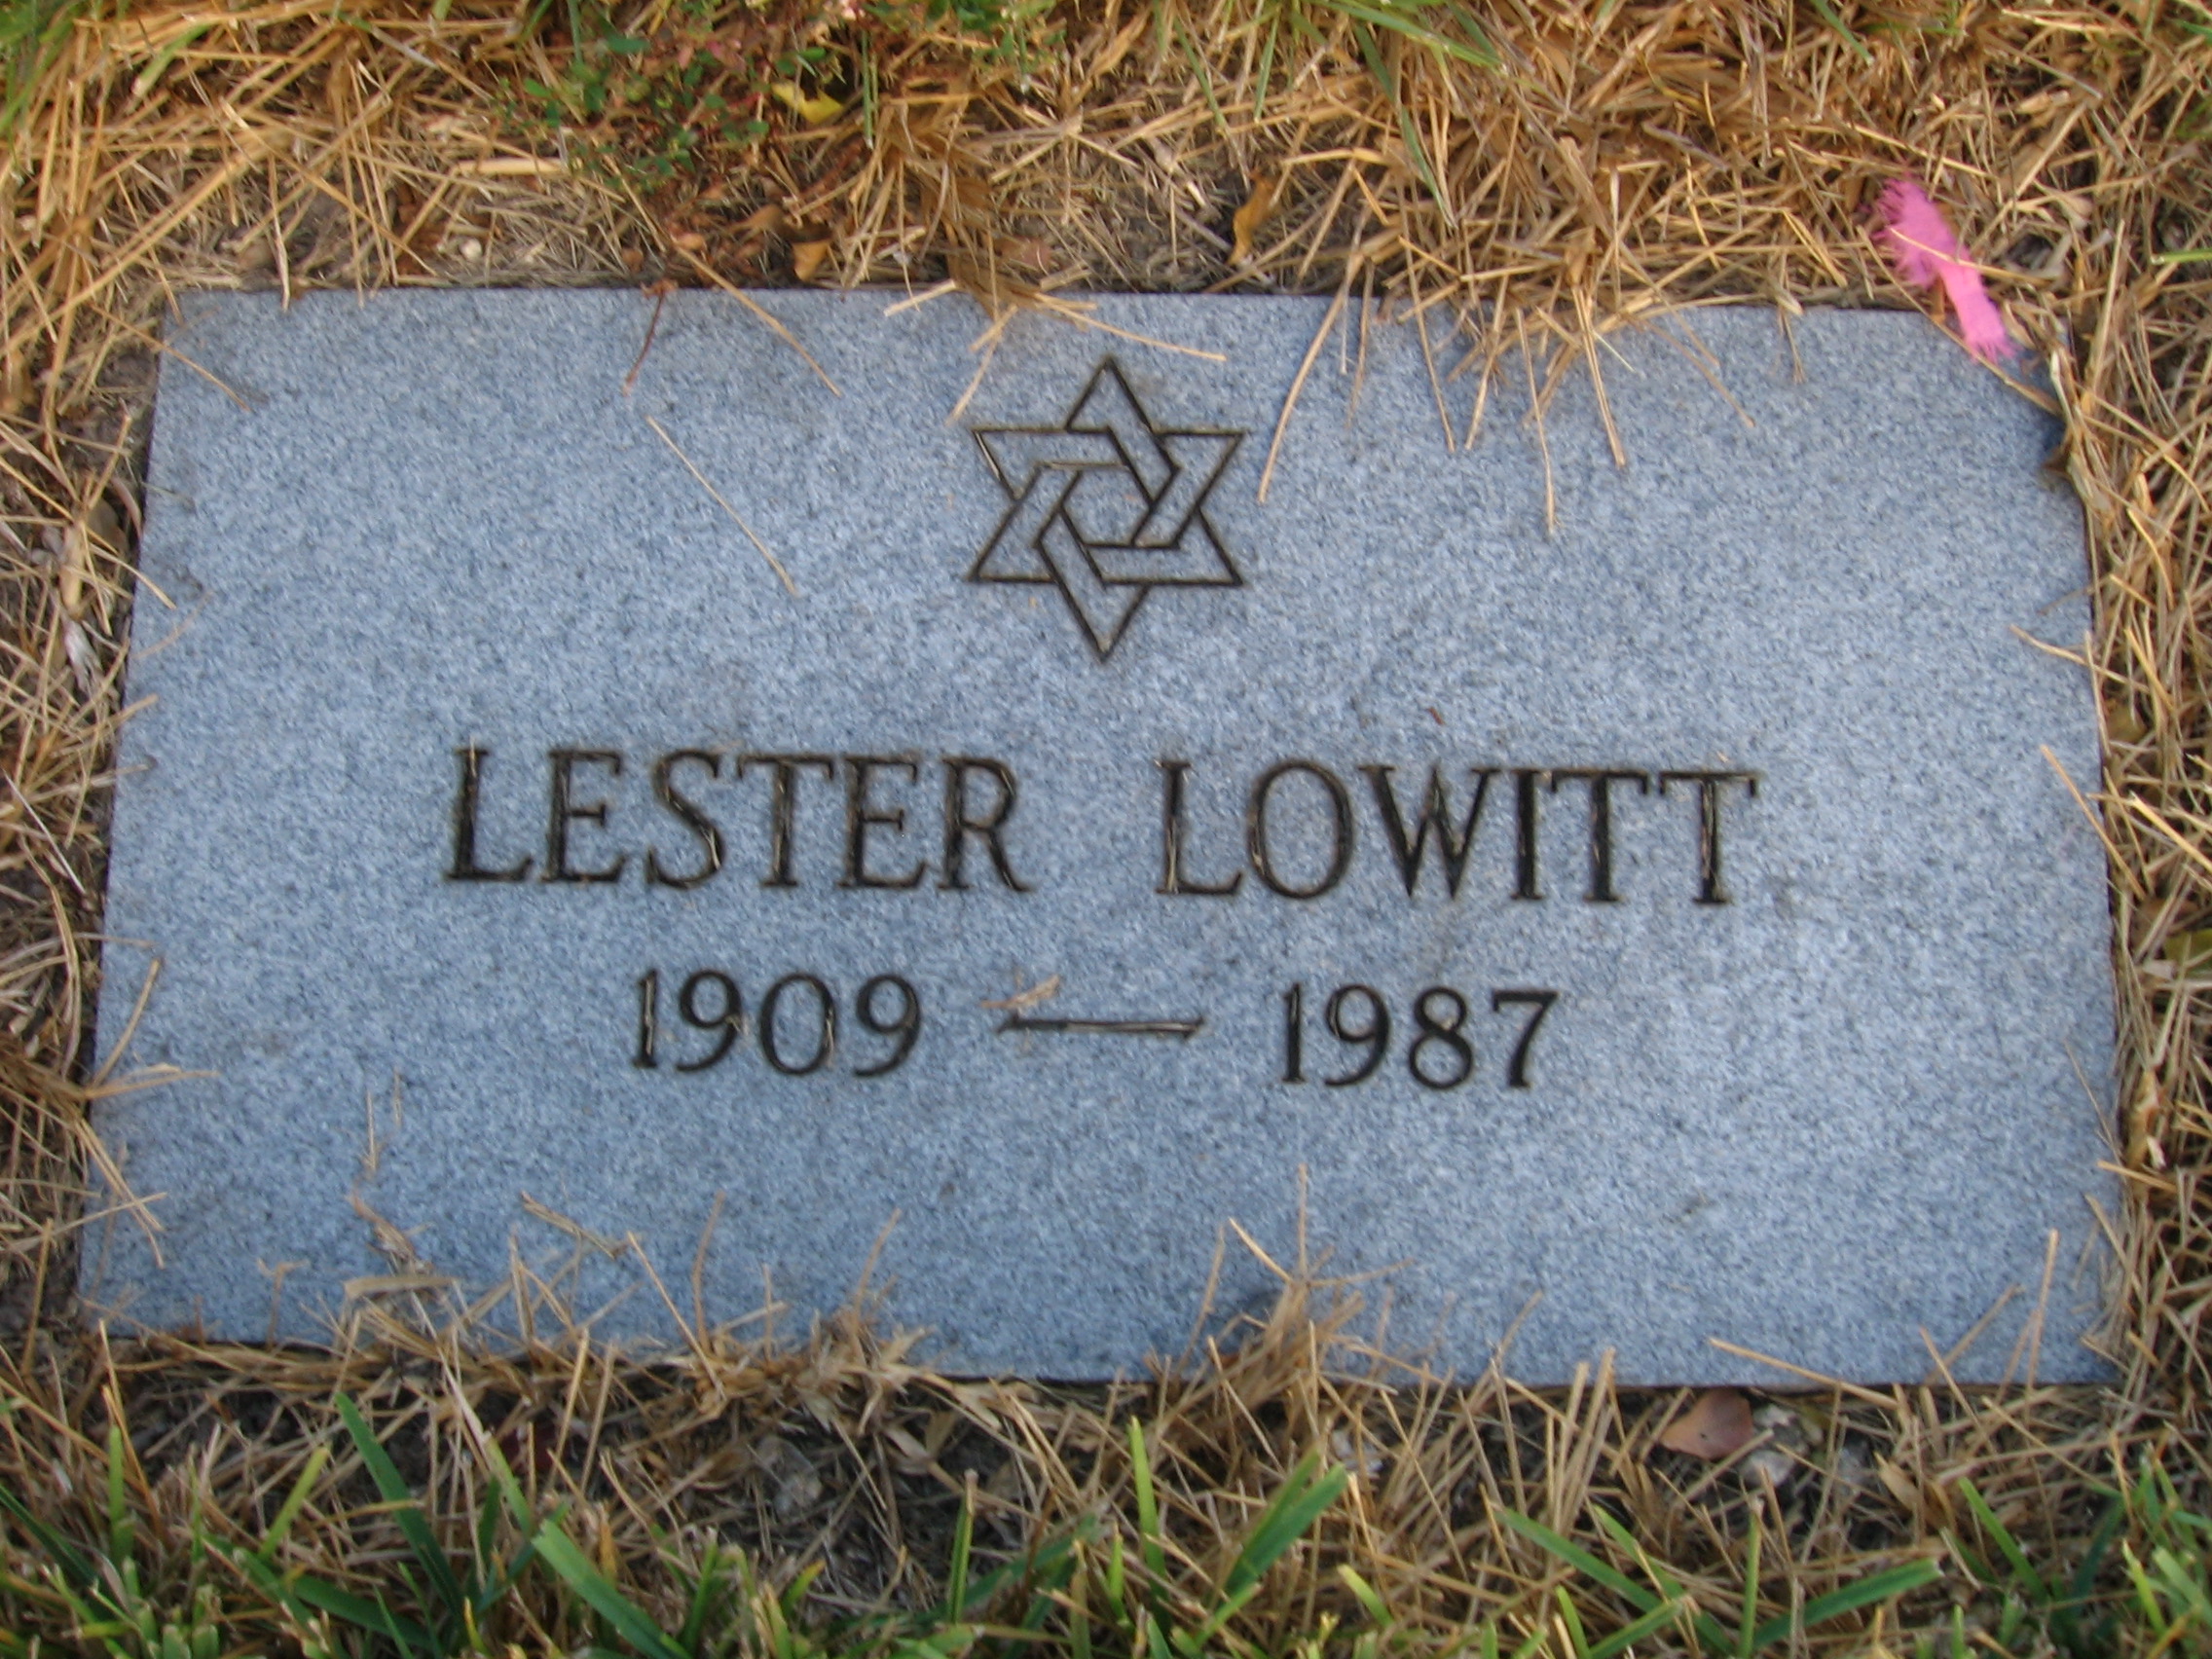 Lester Lowitt